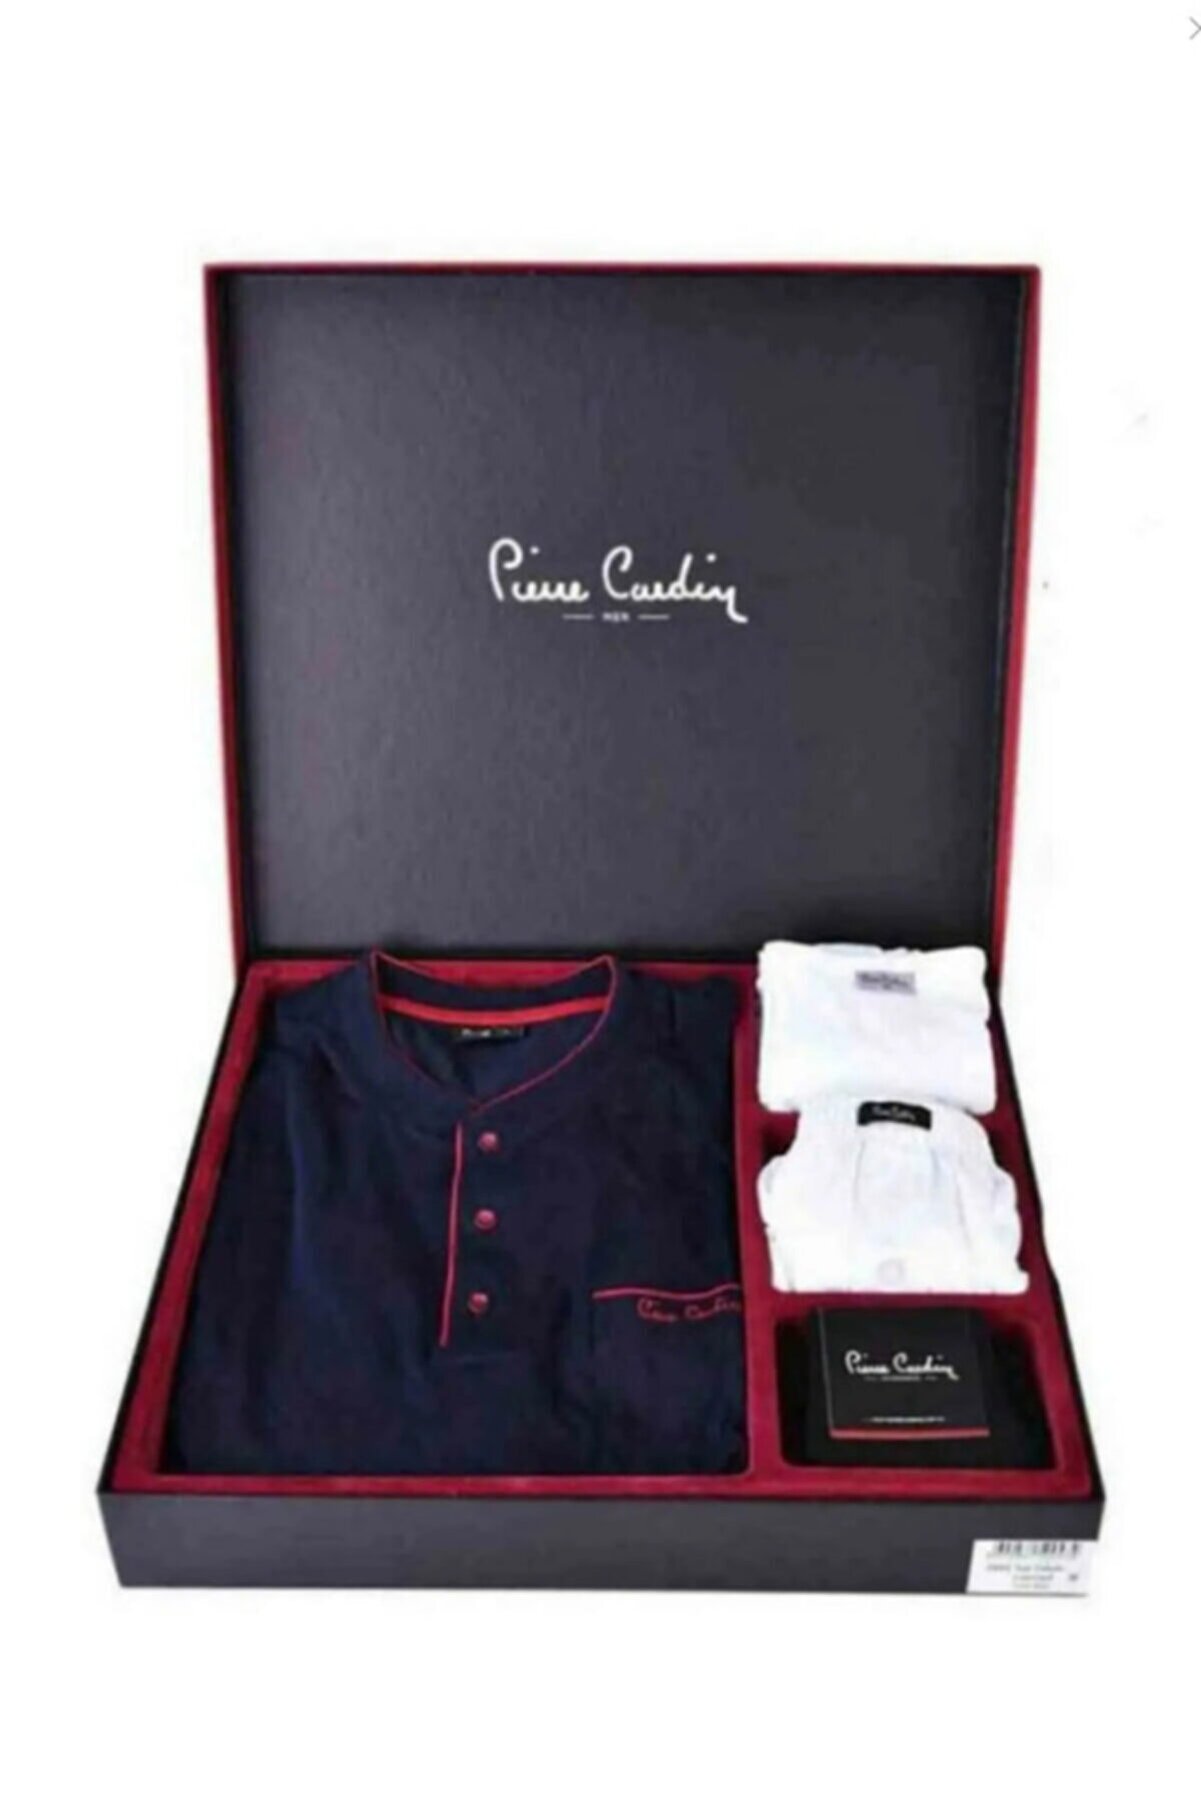 Pierre Cardin Damat Çeyiz Lacivert Pijama Çamaşır Set Takım 2000